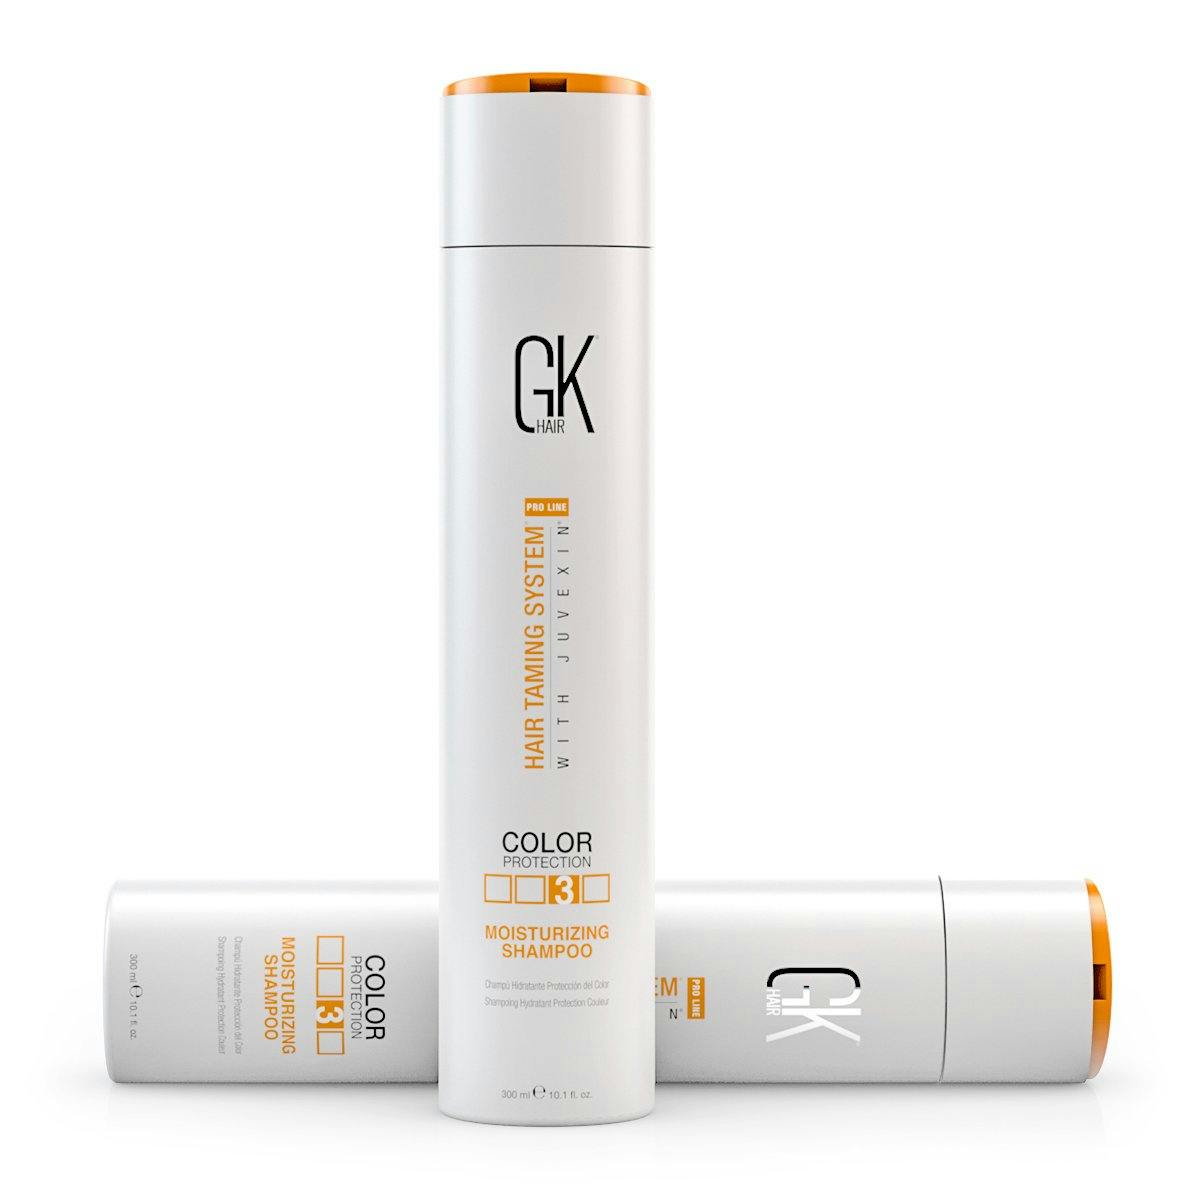 GK Hair Colour Protection Moisturizing Shampoo 300ml